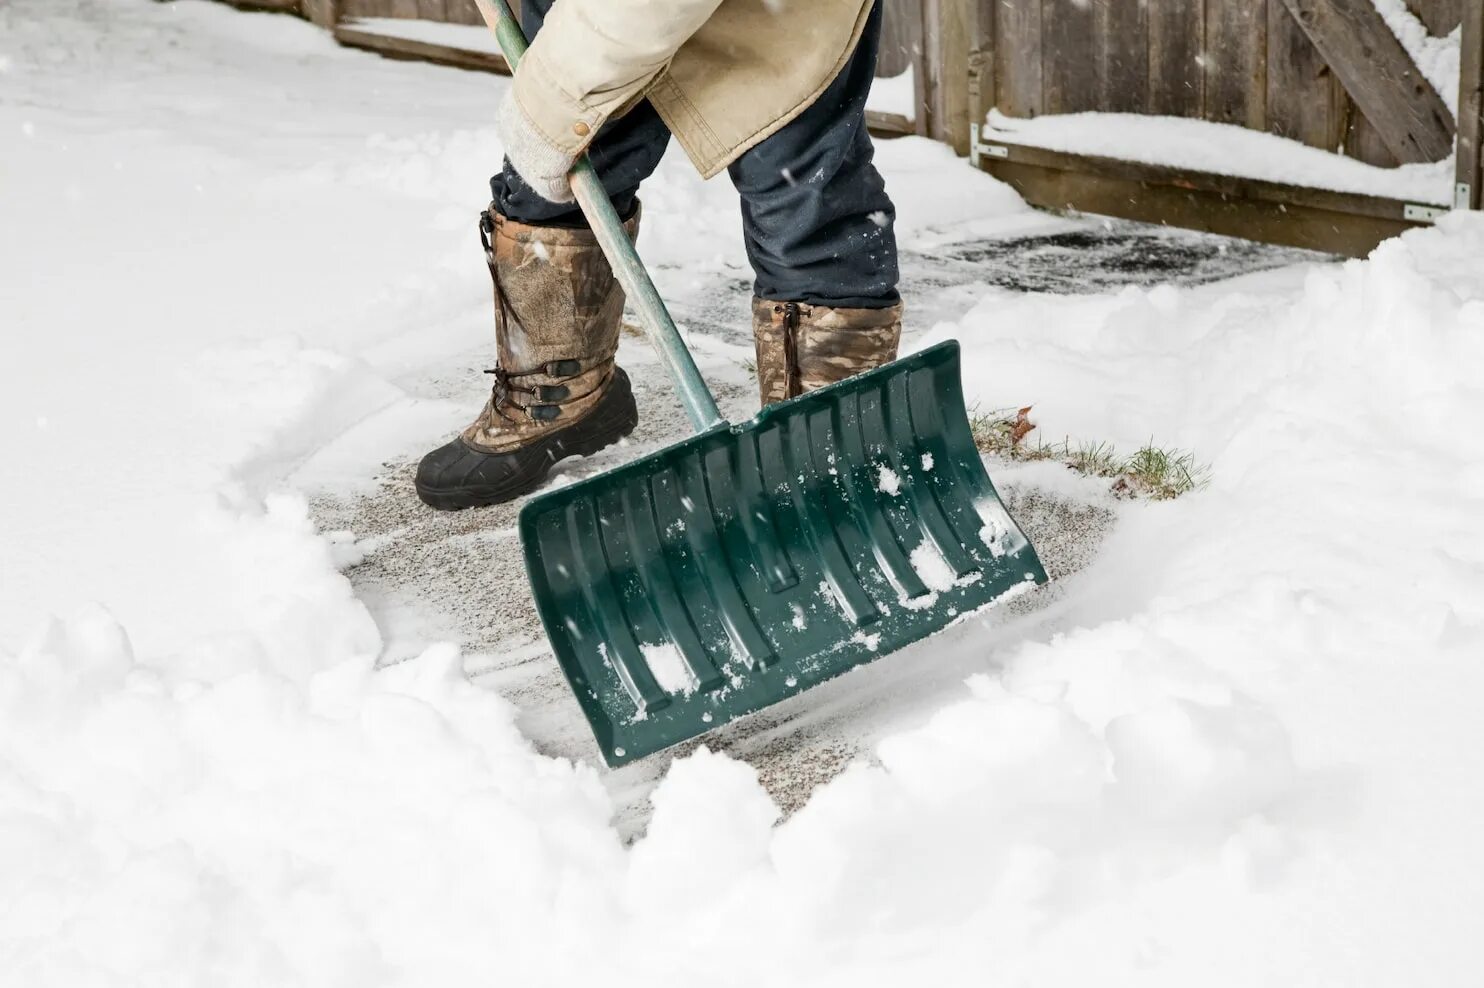 Сломалась лопата для снега. Лопата для снега и зерна. Кидает снег лопатой. Брошенная снеговая лопата. Кидает лопатой